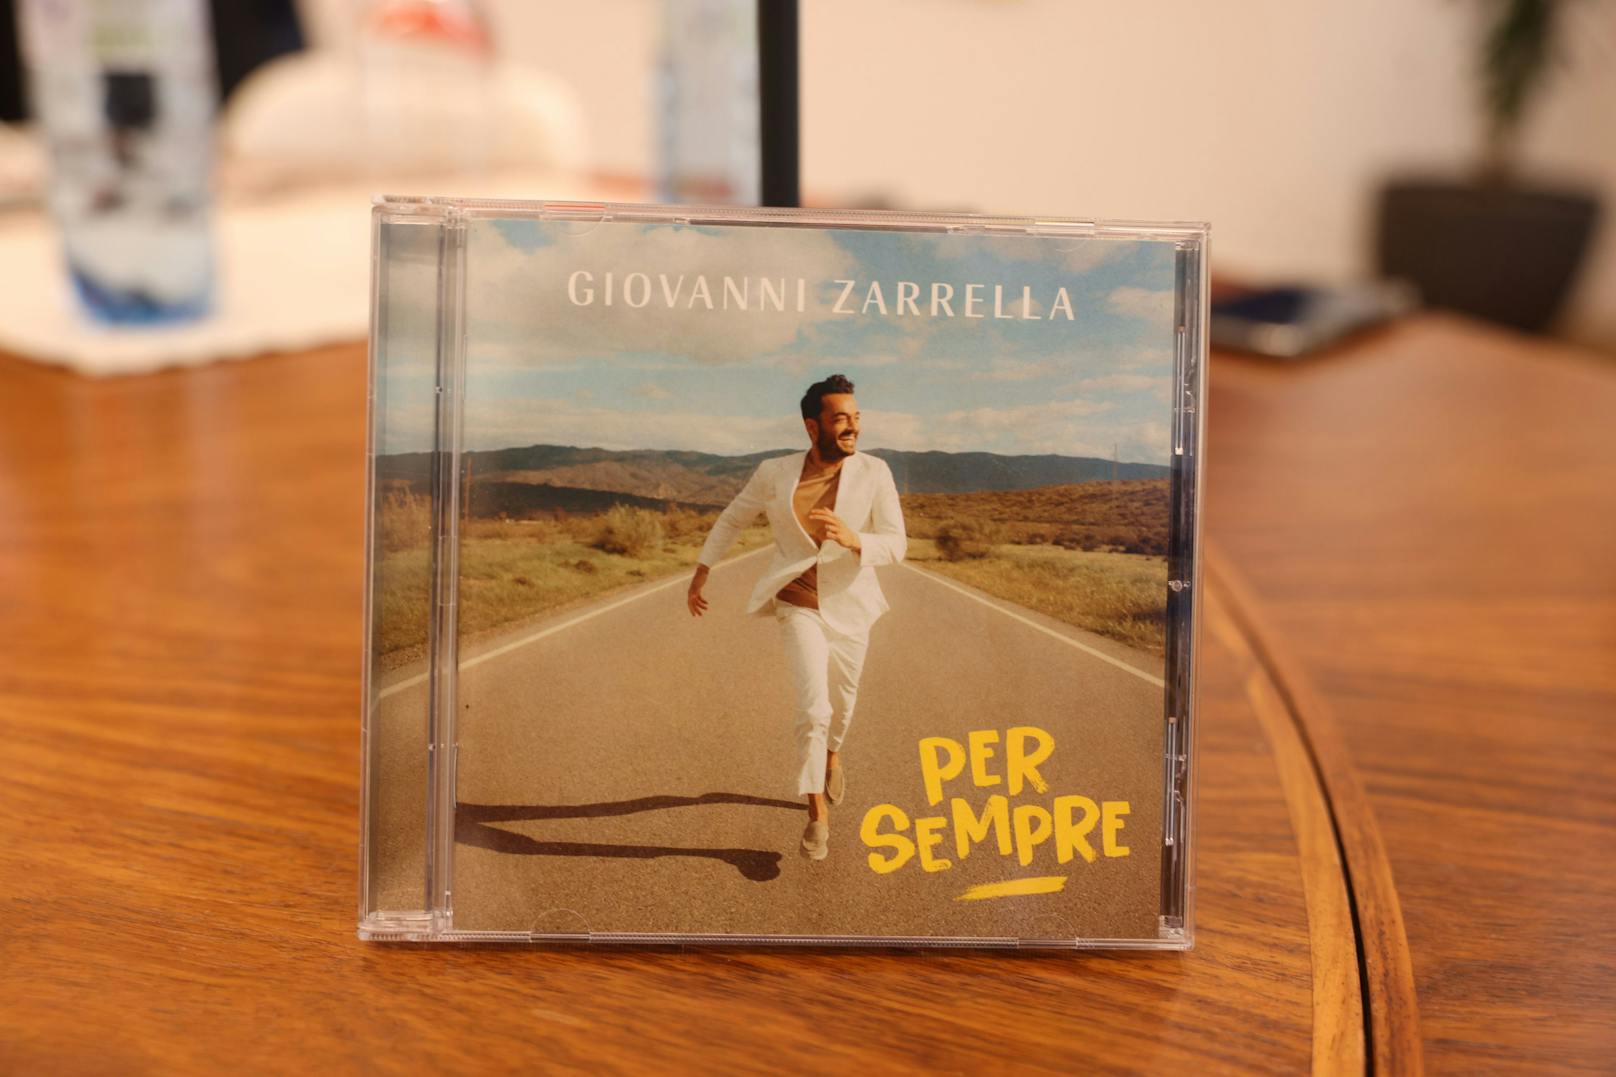 Das Album "Per Sempre" gibt es ab heute zu kaufen.